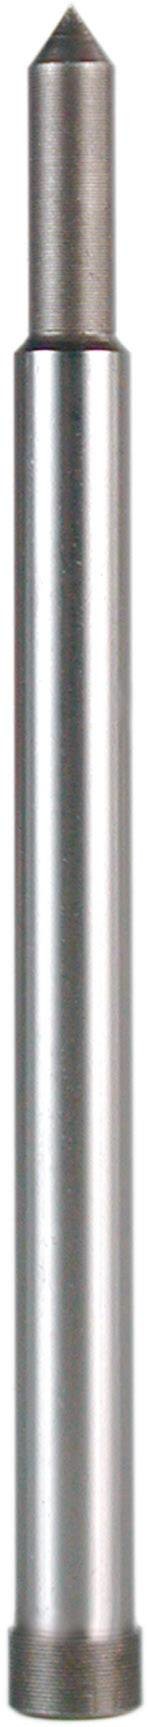 RUKO  108304 vyhazovací kolík  6.4 mm  1 ks